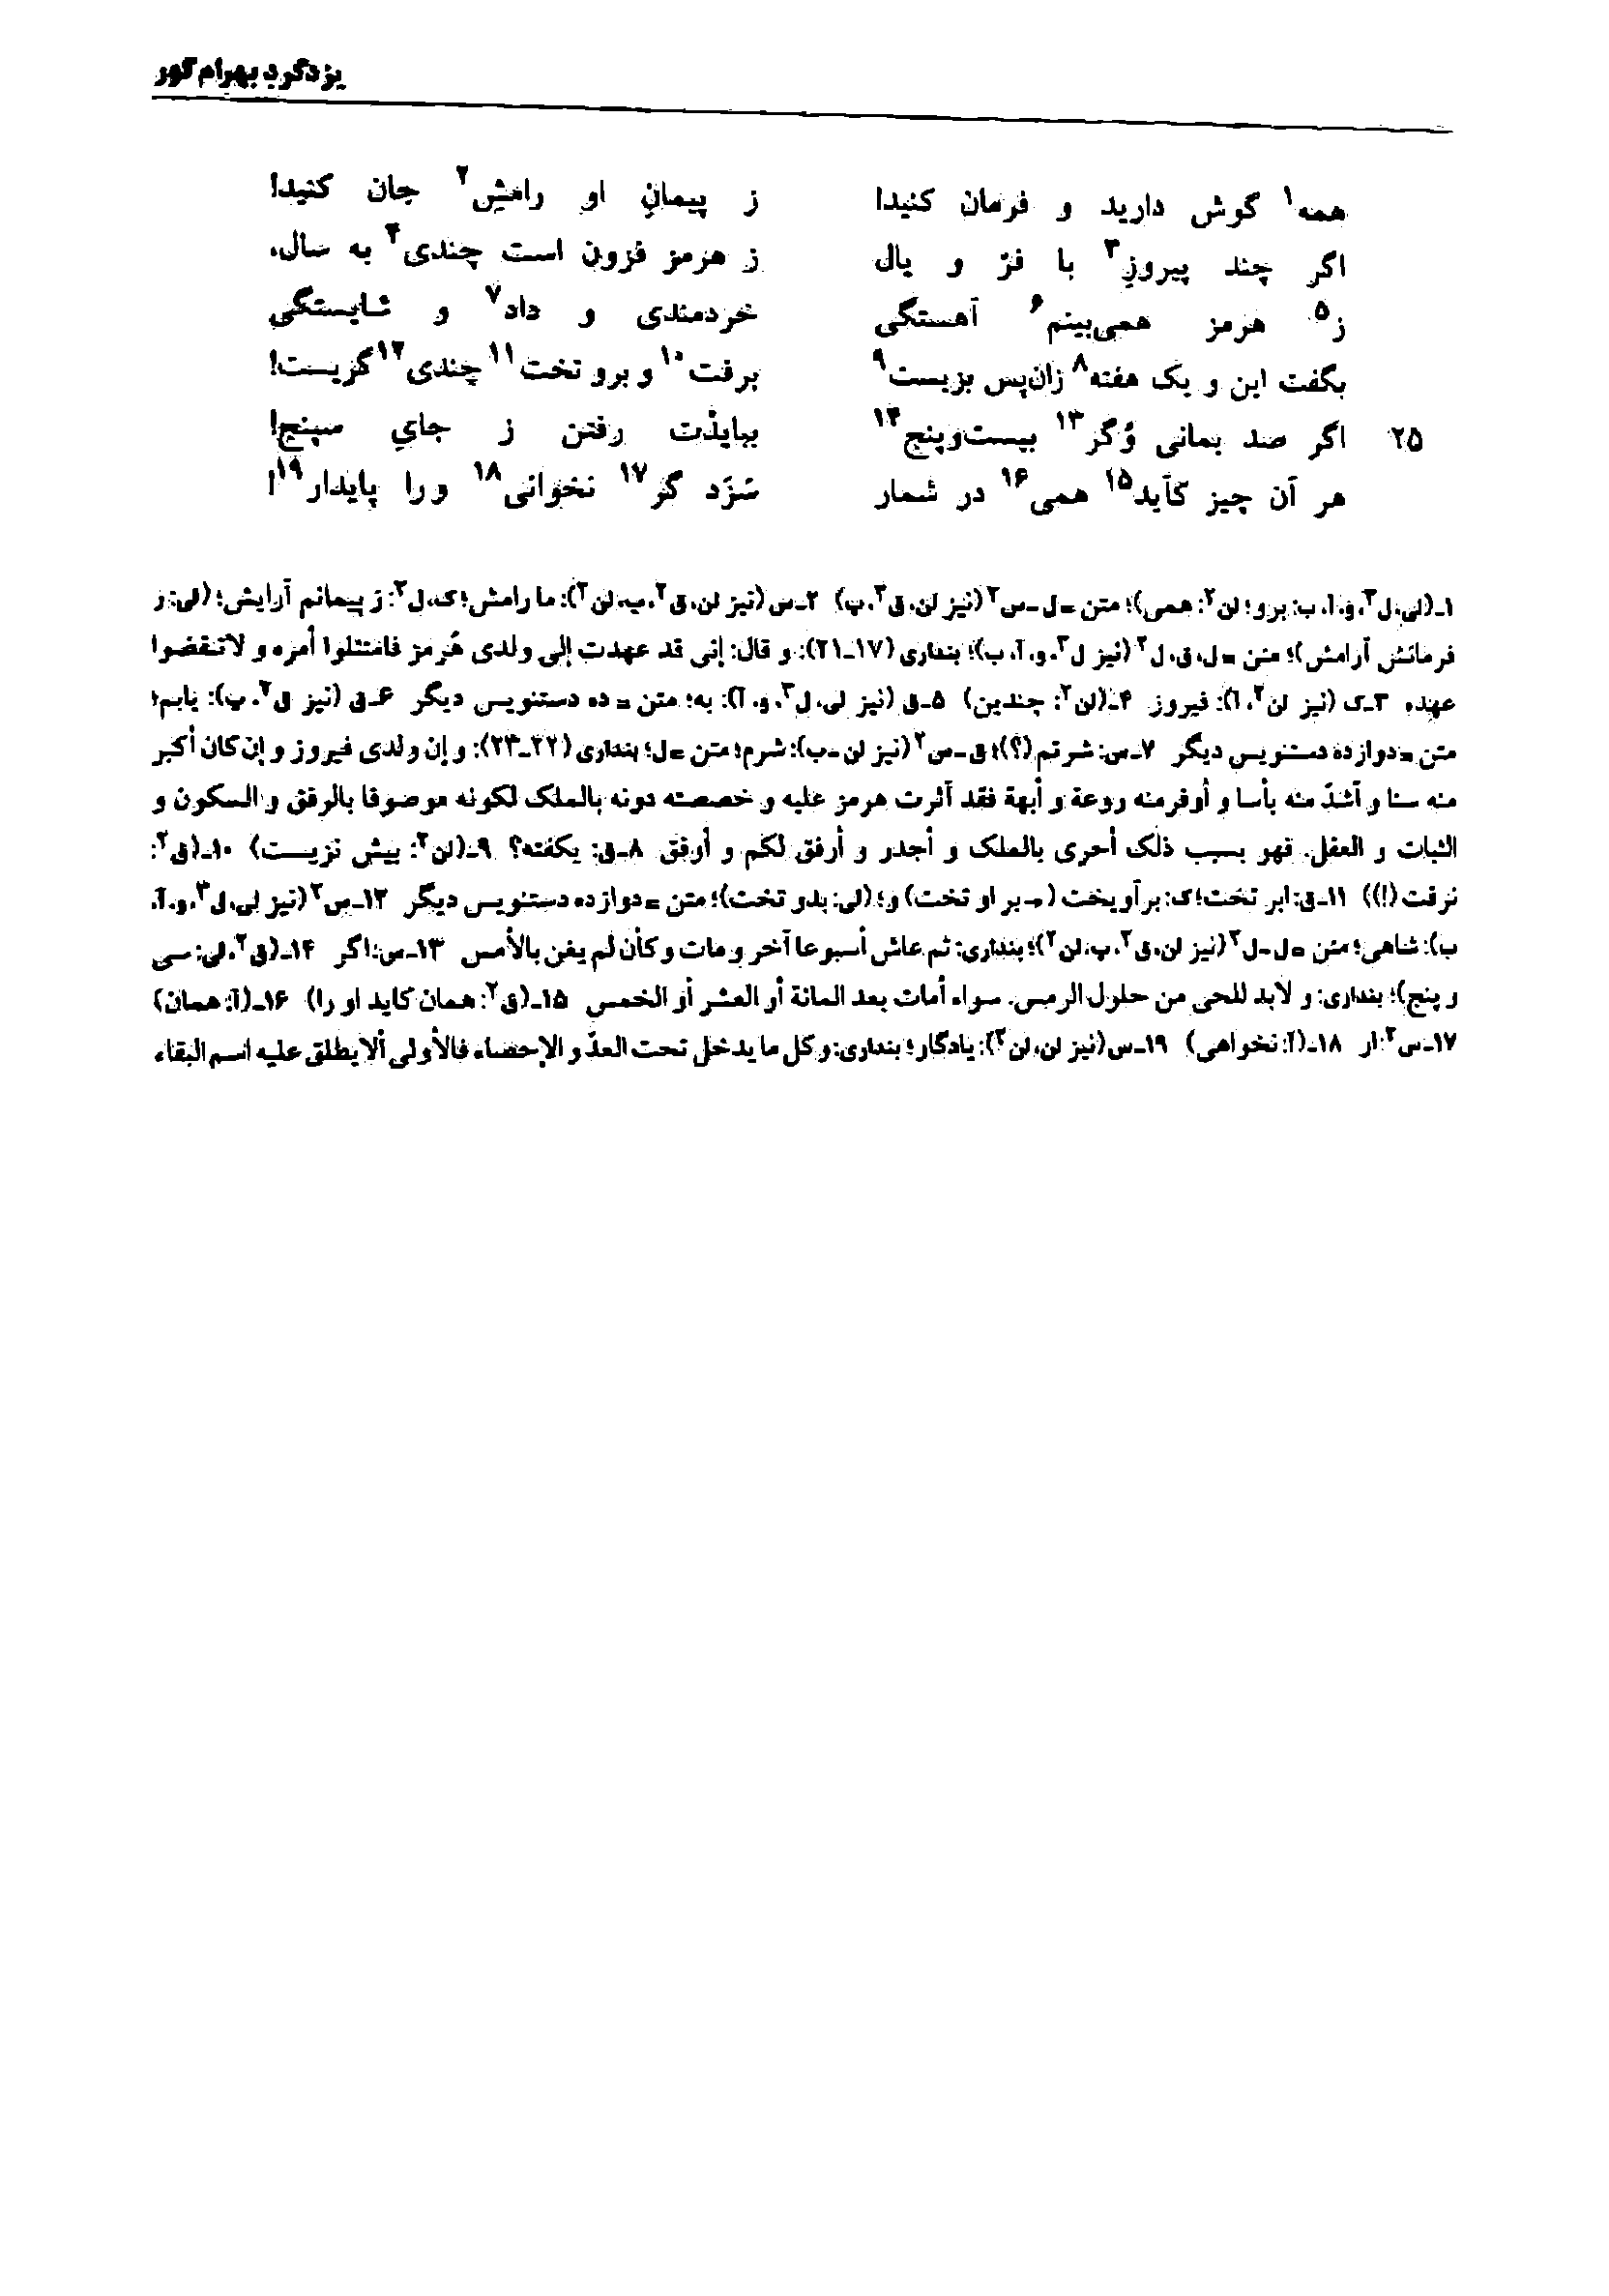 vol. 7, p. 5